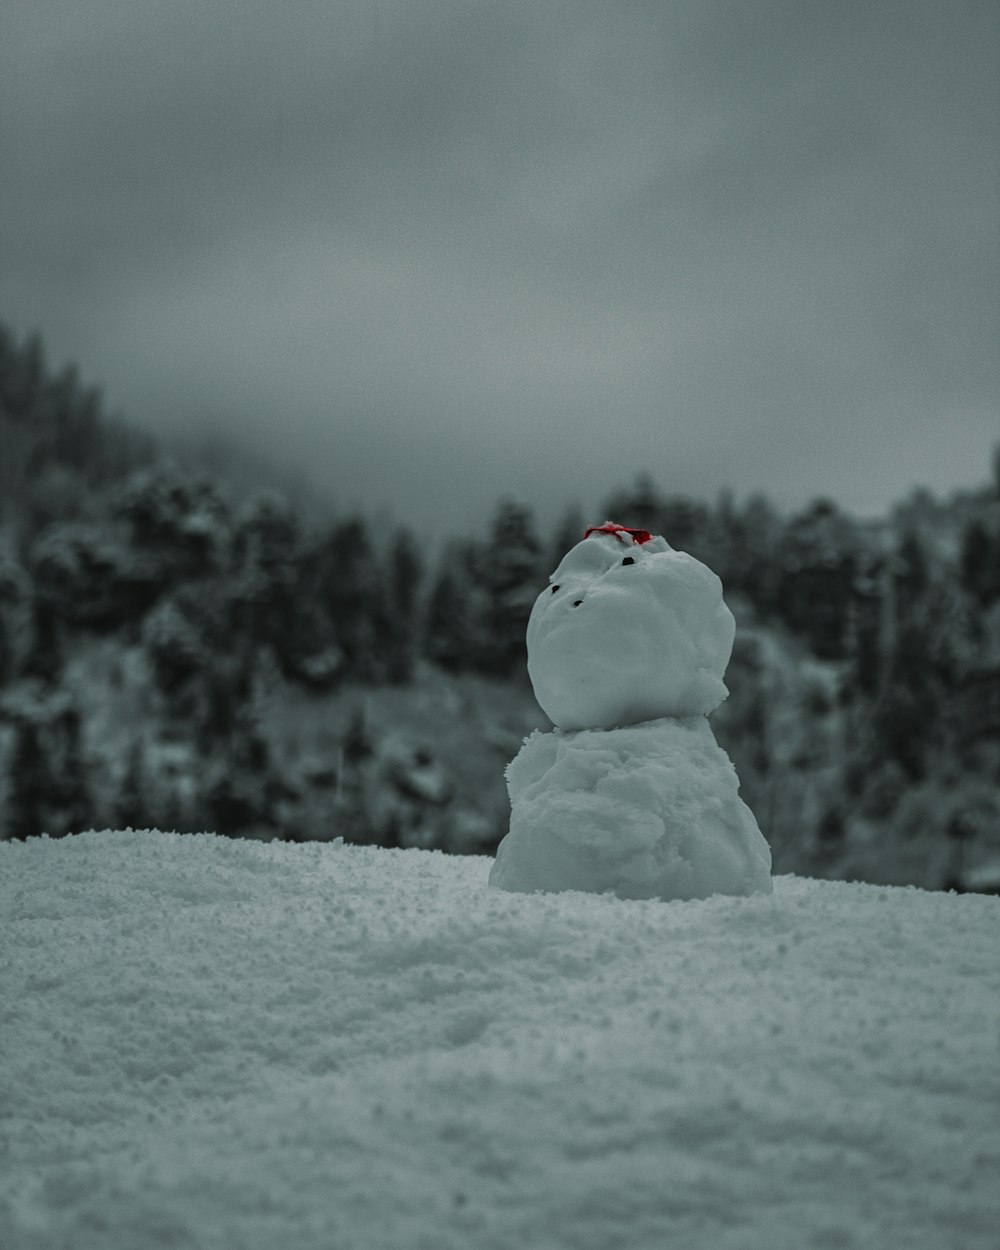 Schneemann tagsüber auf schneebedecktem Boden